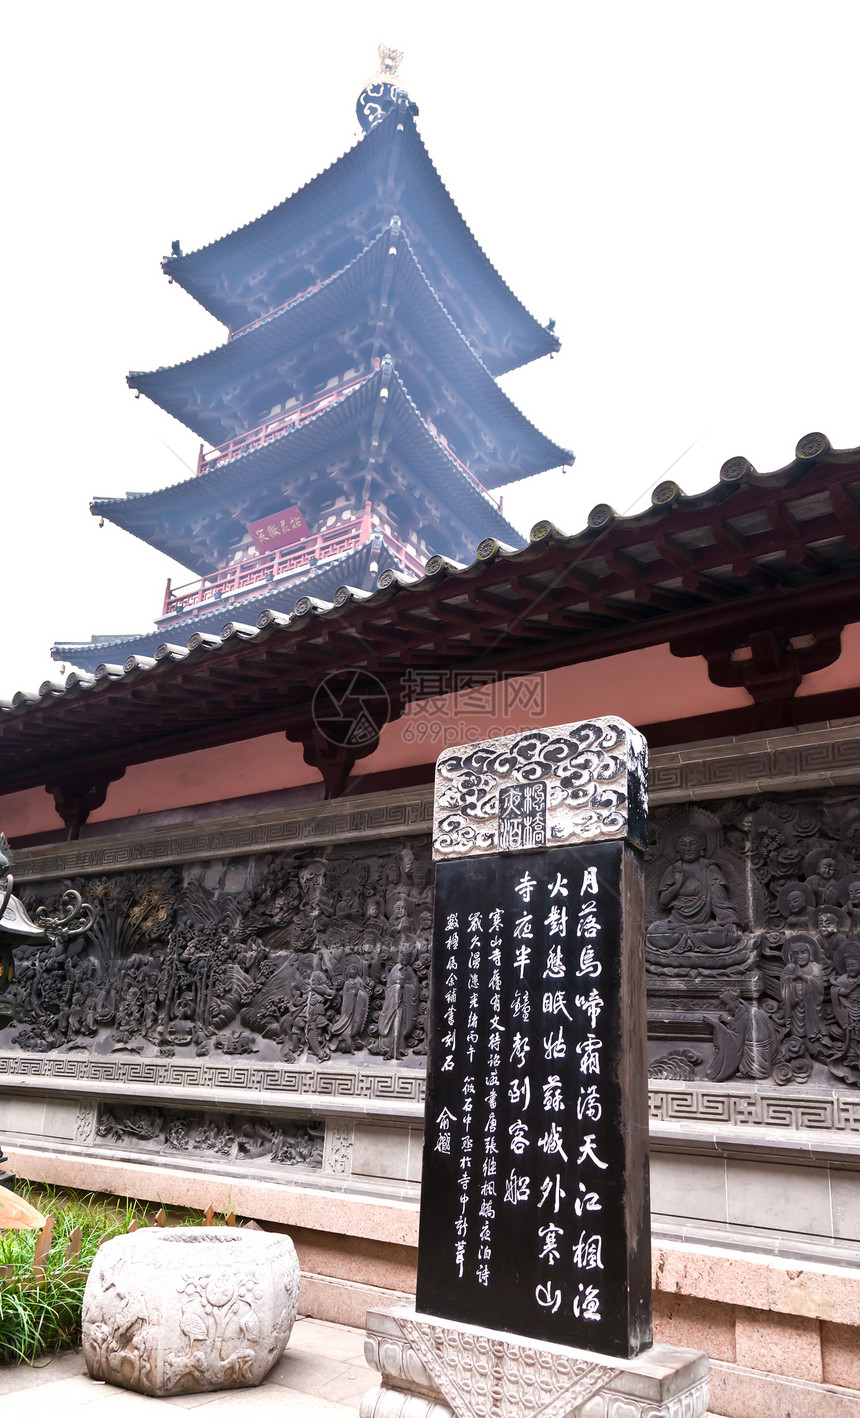 中国苏州汉尚西寺建筑物佛教徒寺庙雕塑精神宝塔宗教雕刻图片